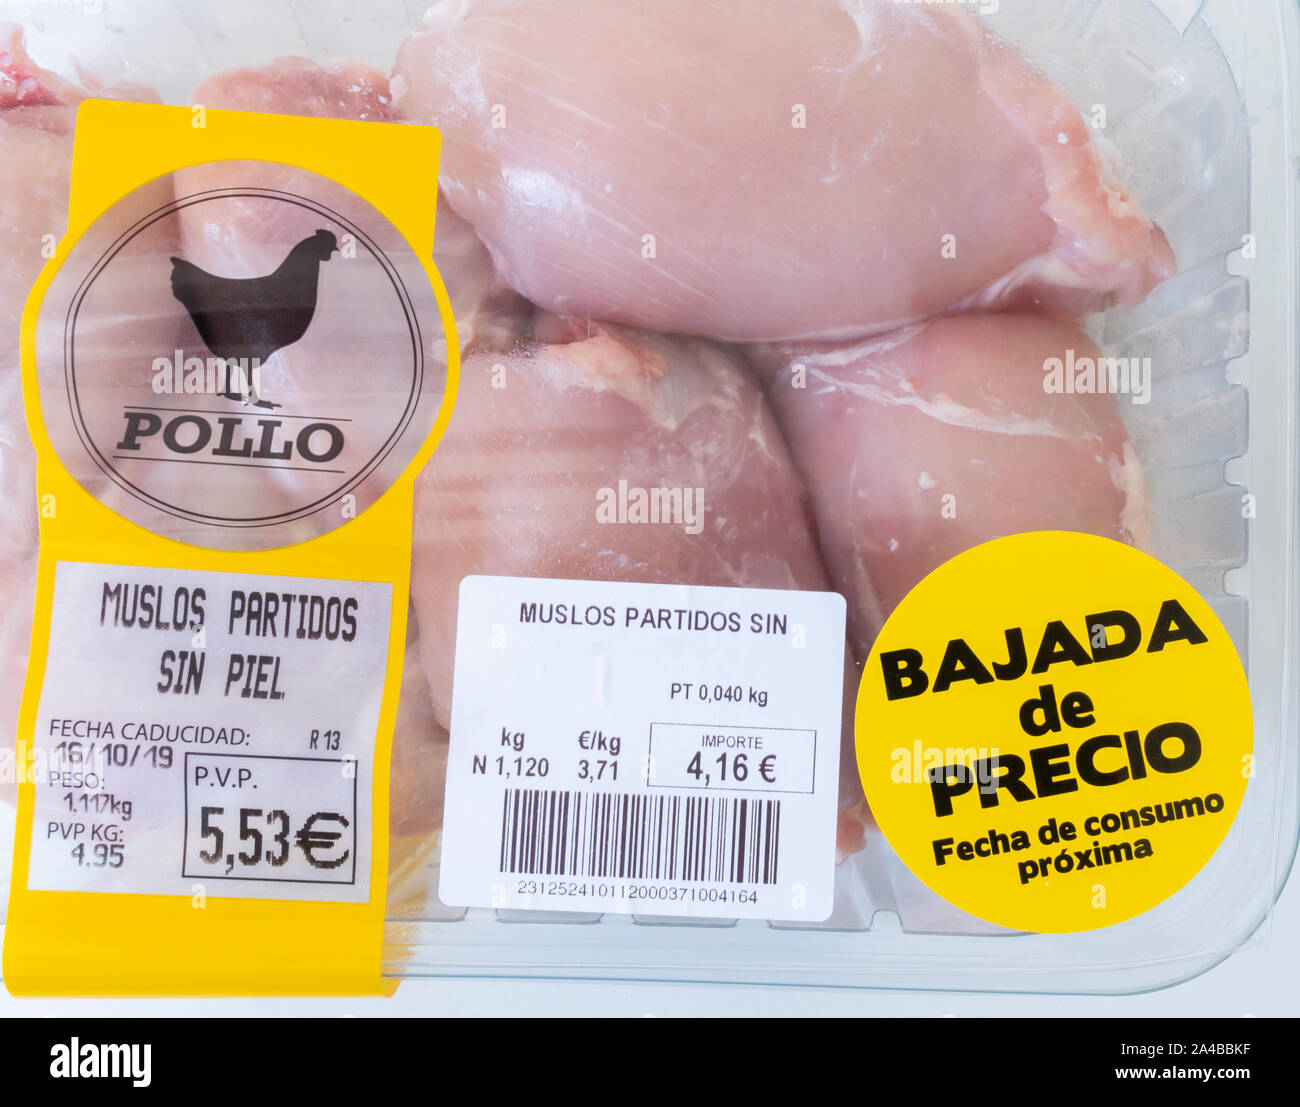 Fresche, pollo senza pelle thighes confezionato in imballaggi di plastica con prezzo ridotto adesivo in un supermercato in Spagna. Foto Stock